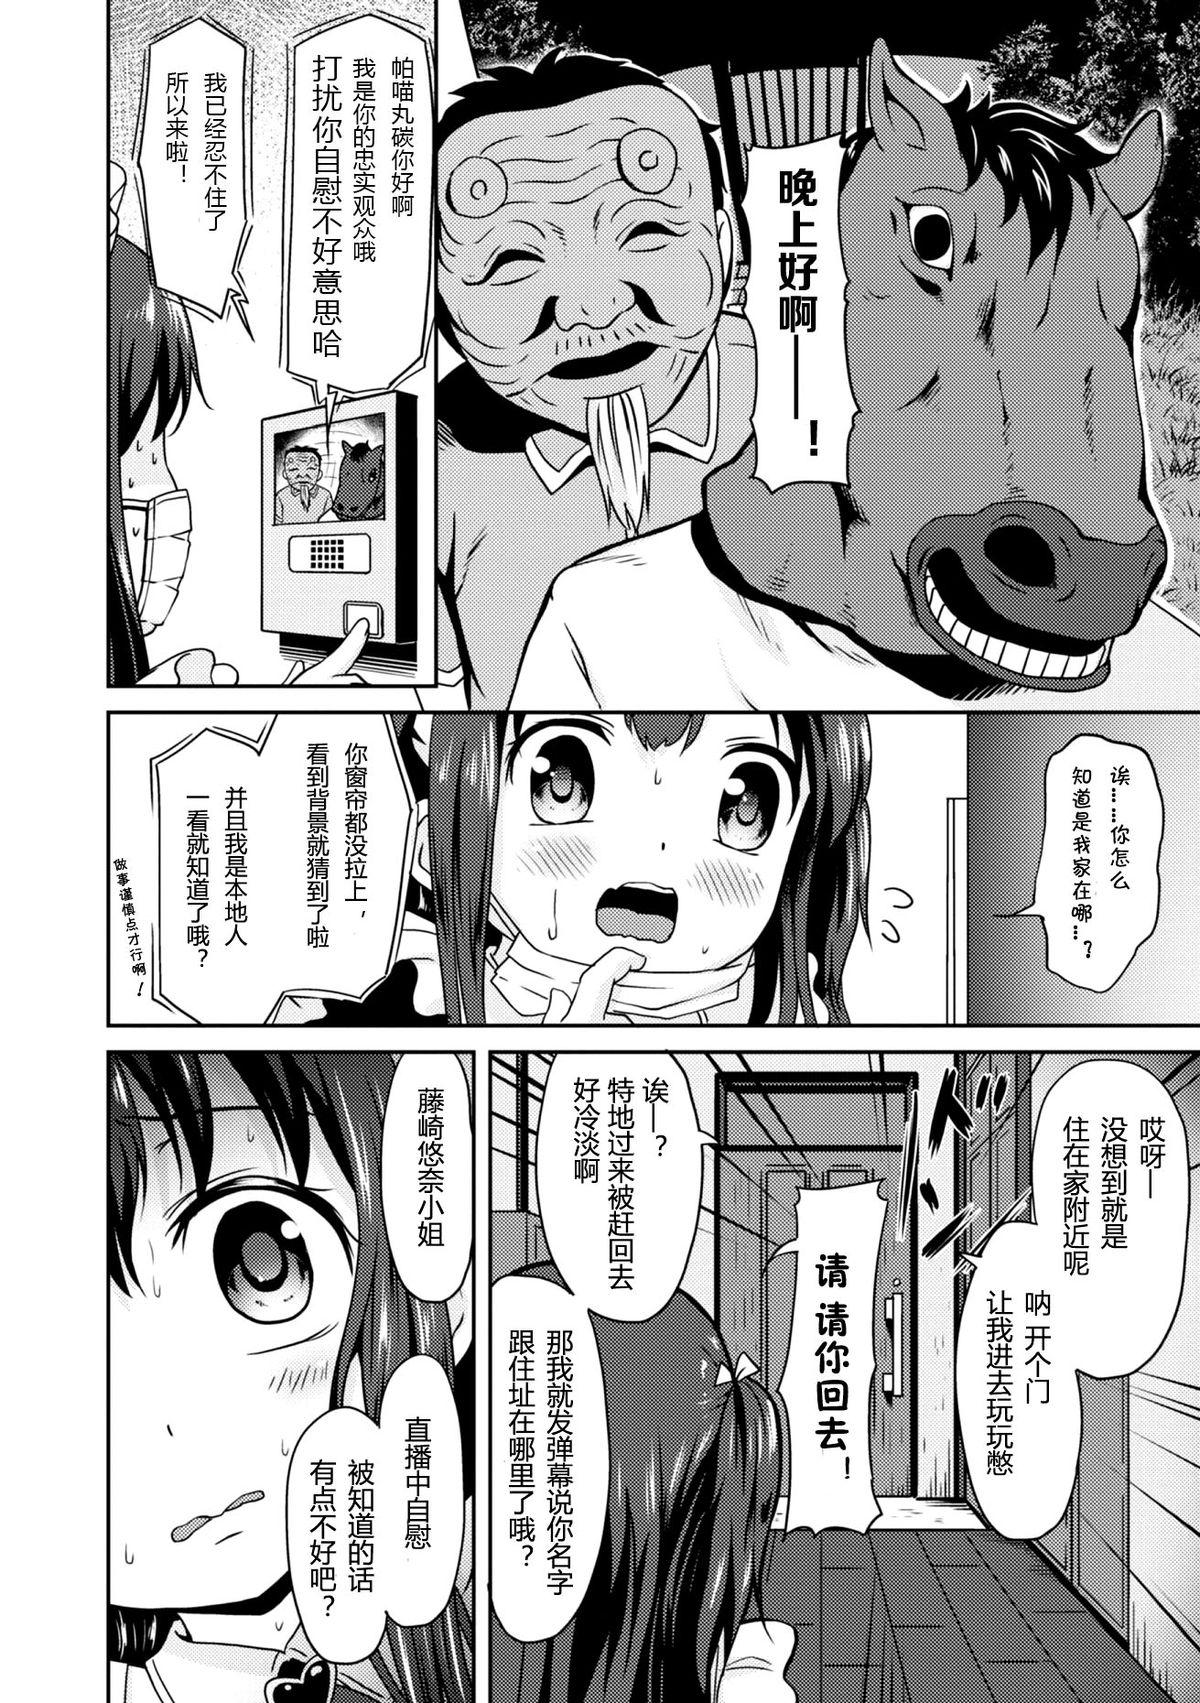 Ohmibod "Jigoku no" Panyumaru Seihaishin - Maboroshi no Guest Kai "ReaTotsu" Aunt - Page 6